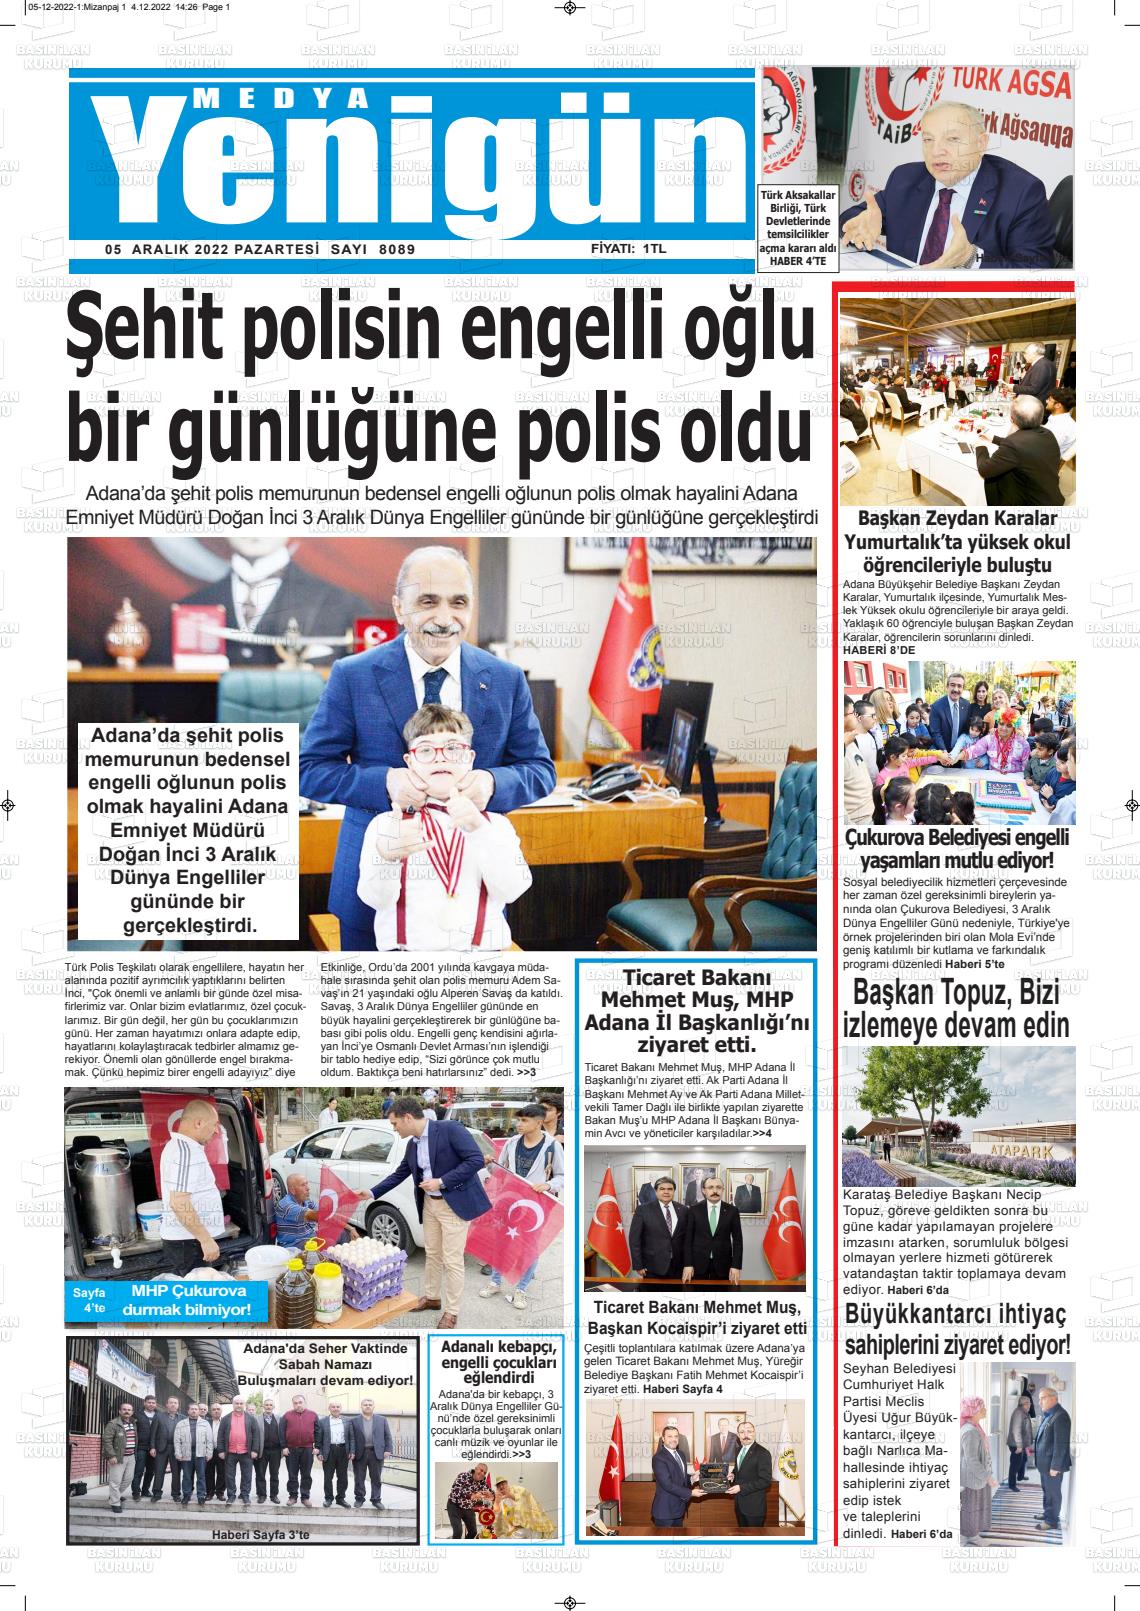 05 Aralık 2022 Medya Yenigün Gazete Manşeti